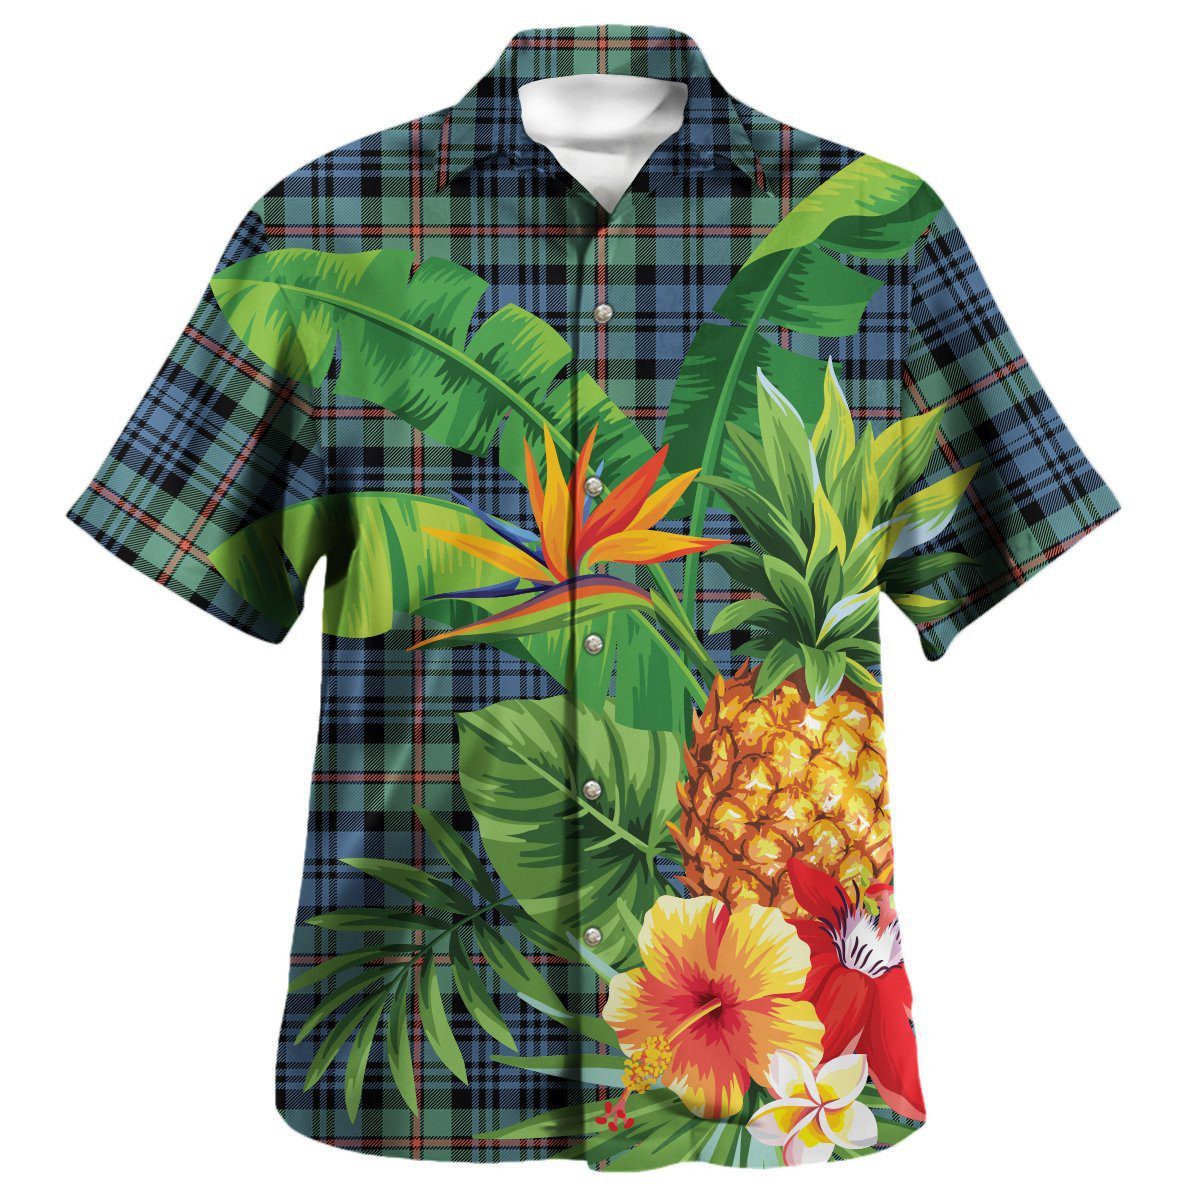 MacKinlay Ancient Tartan Aloha Shirt version 2